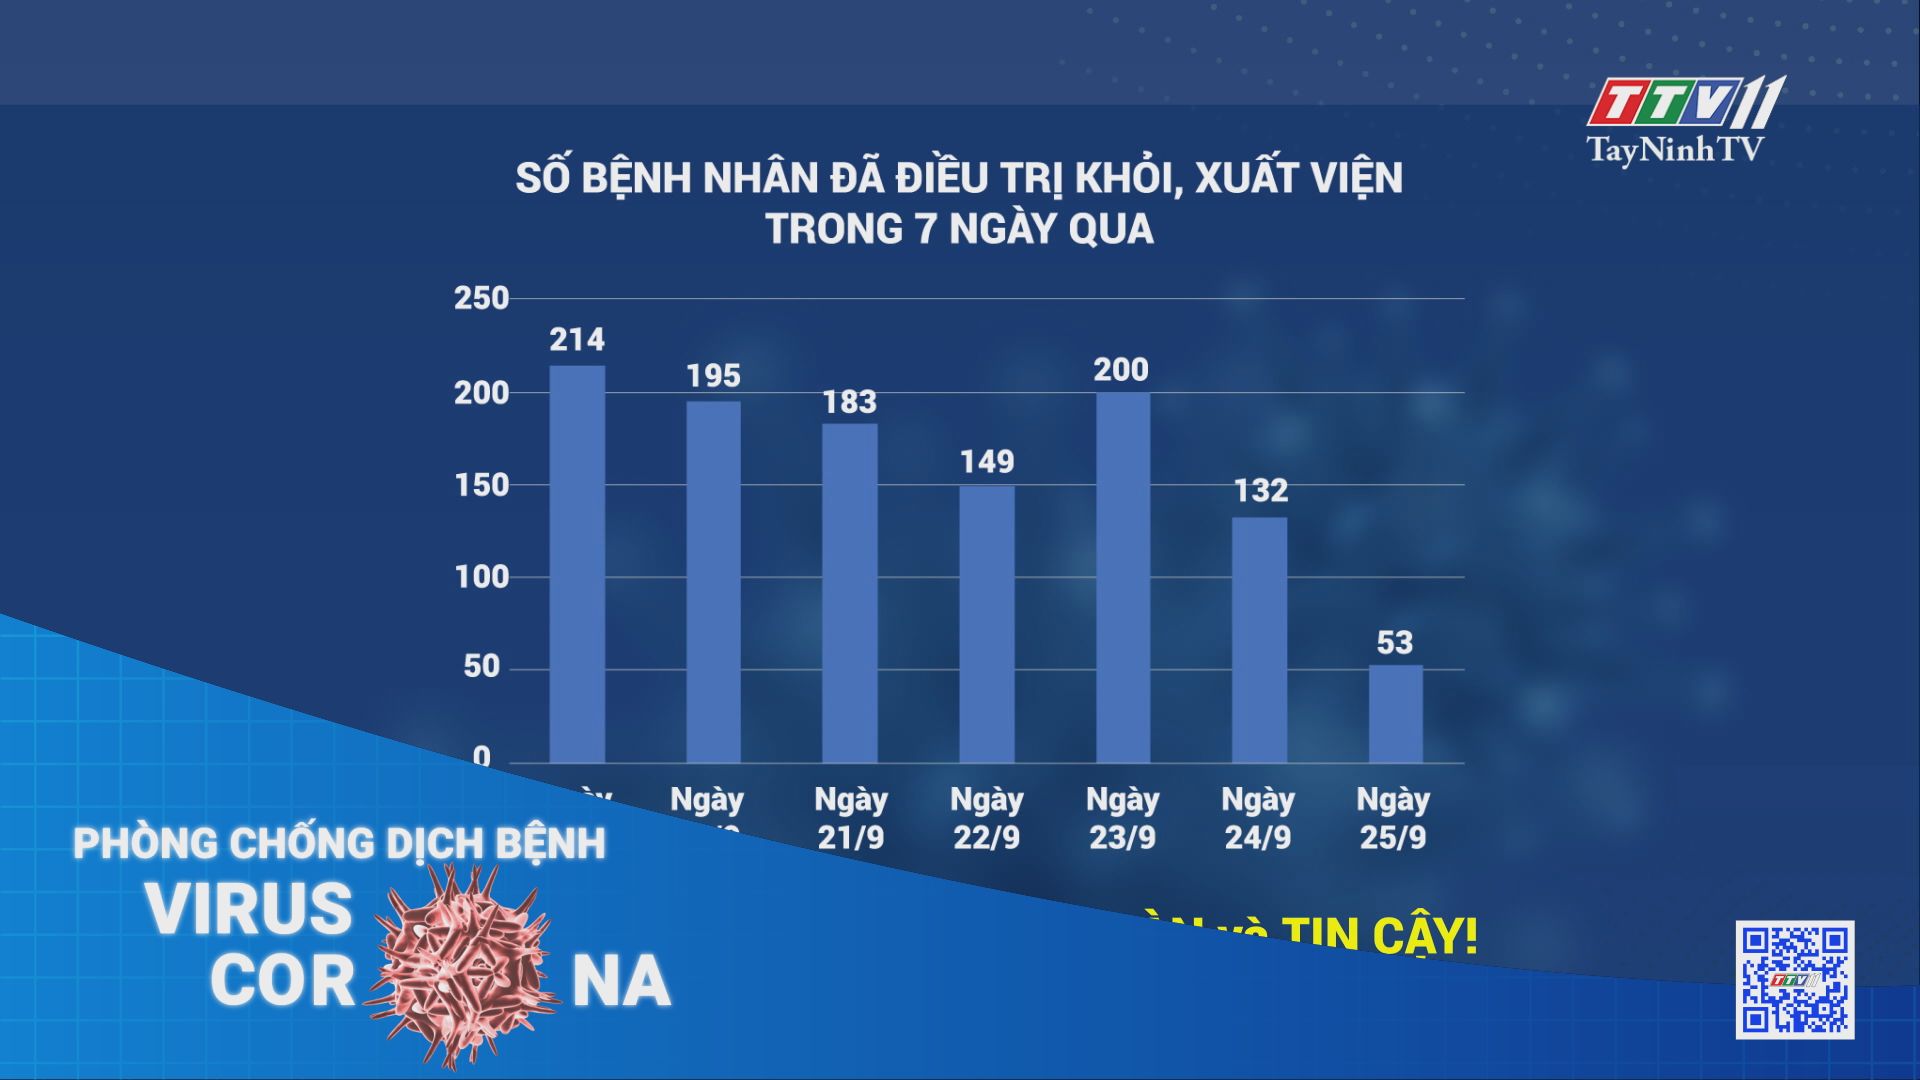 Tình hình dịch Covid-19 tuần qua (từ 19/9 đến 25/9/2021) | TayNinhTV